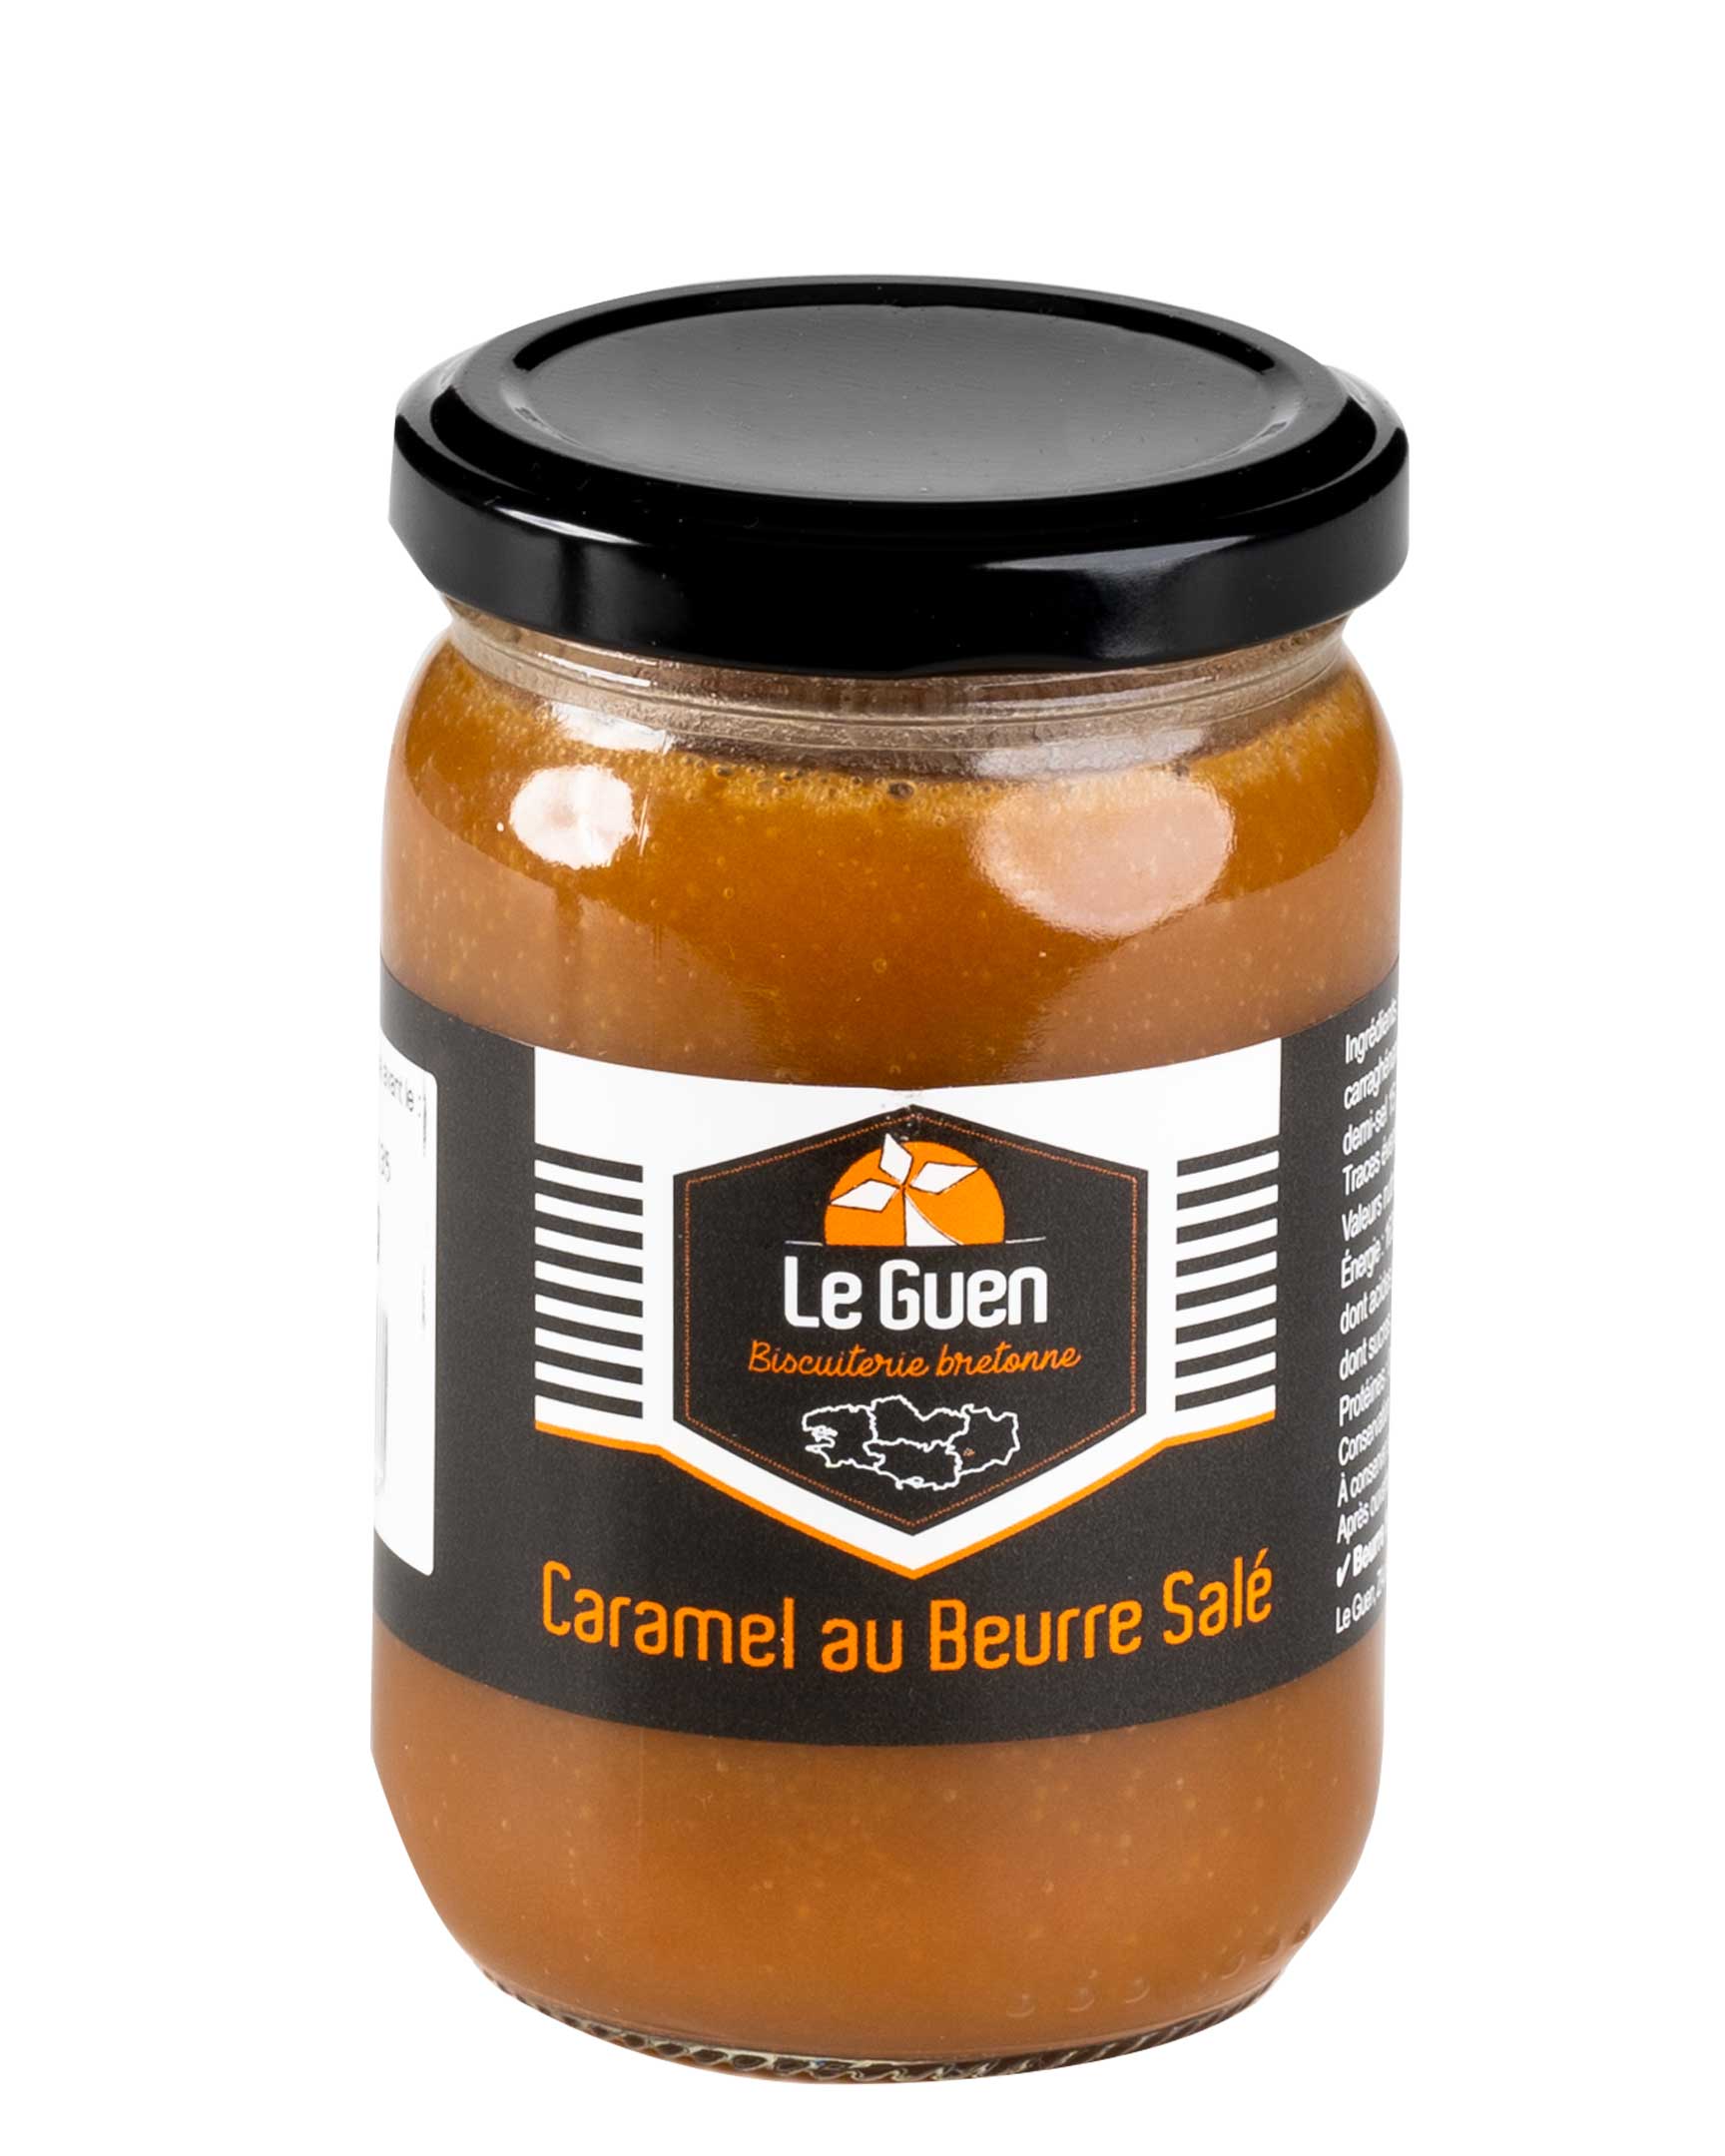 le-guen-caramel-beurre-sale-recette-200-grammes